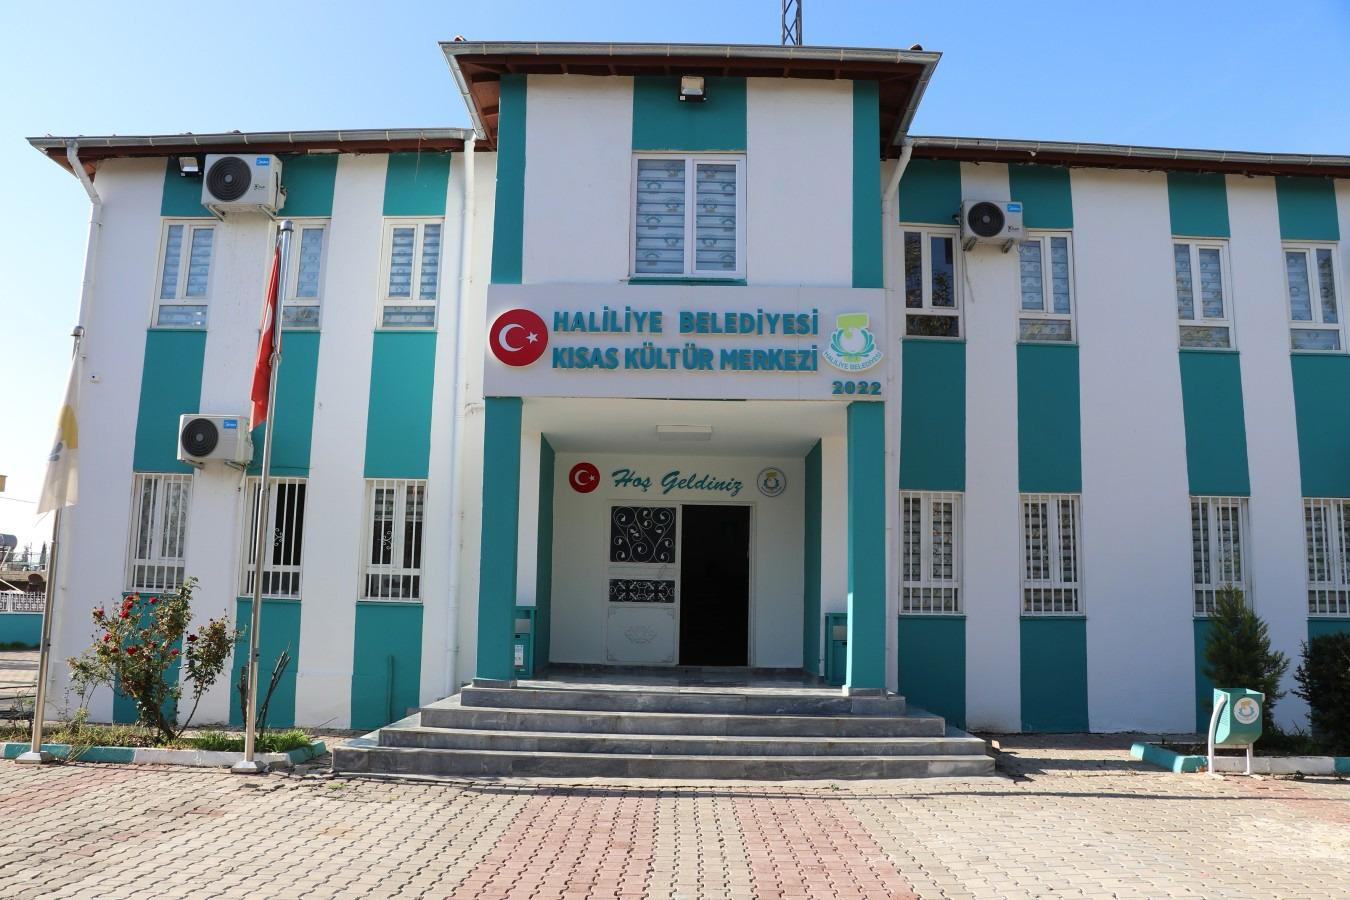 Haliliye Belediyesi Kültür Merkezinde kurs kayıtları devam ediyor